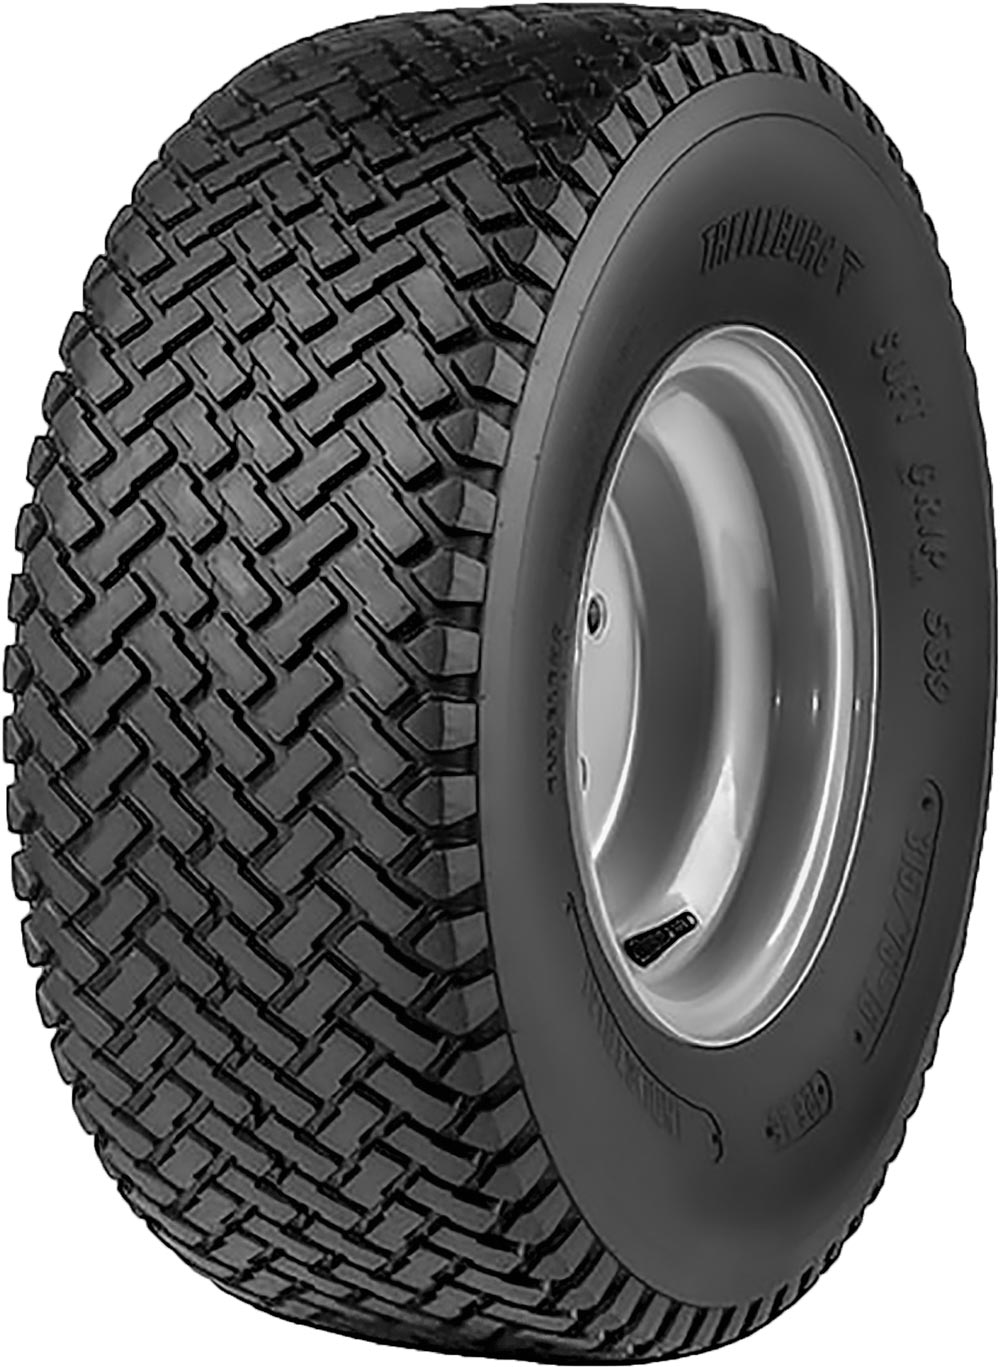 product_type-industrial_tires Trelleborg T539 6PR TT 18 R8.5 P